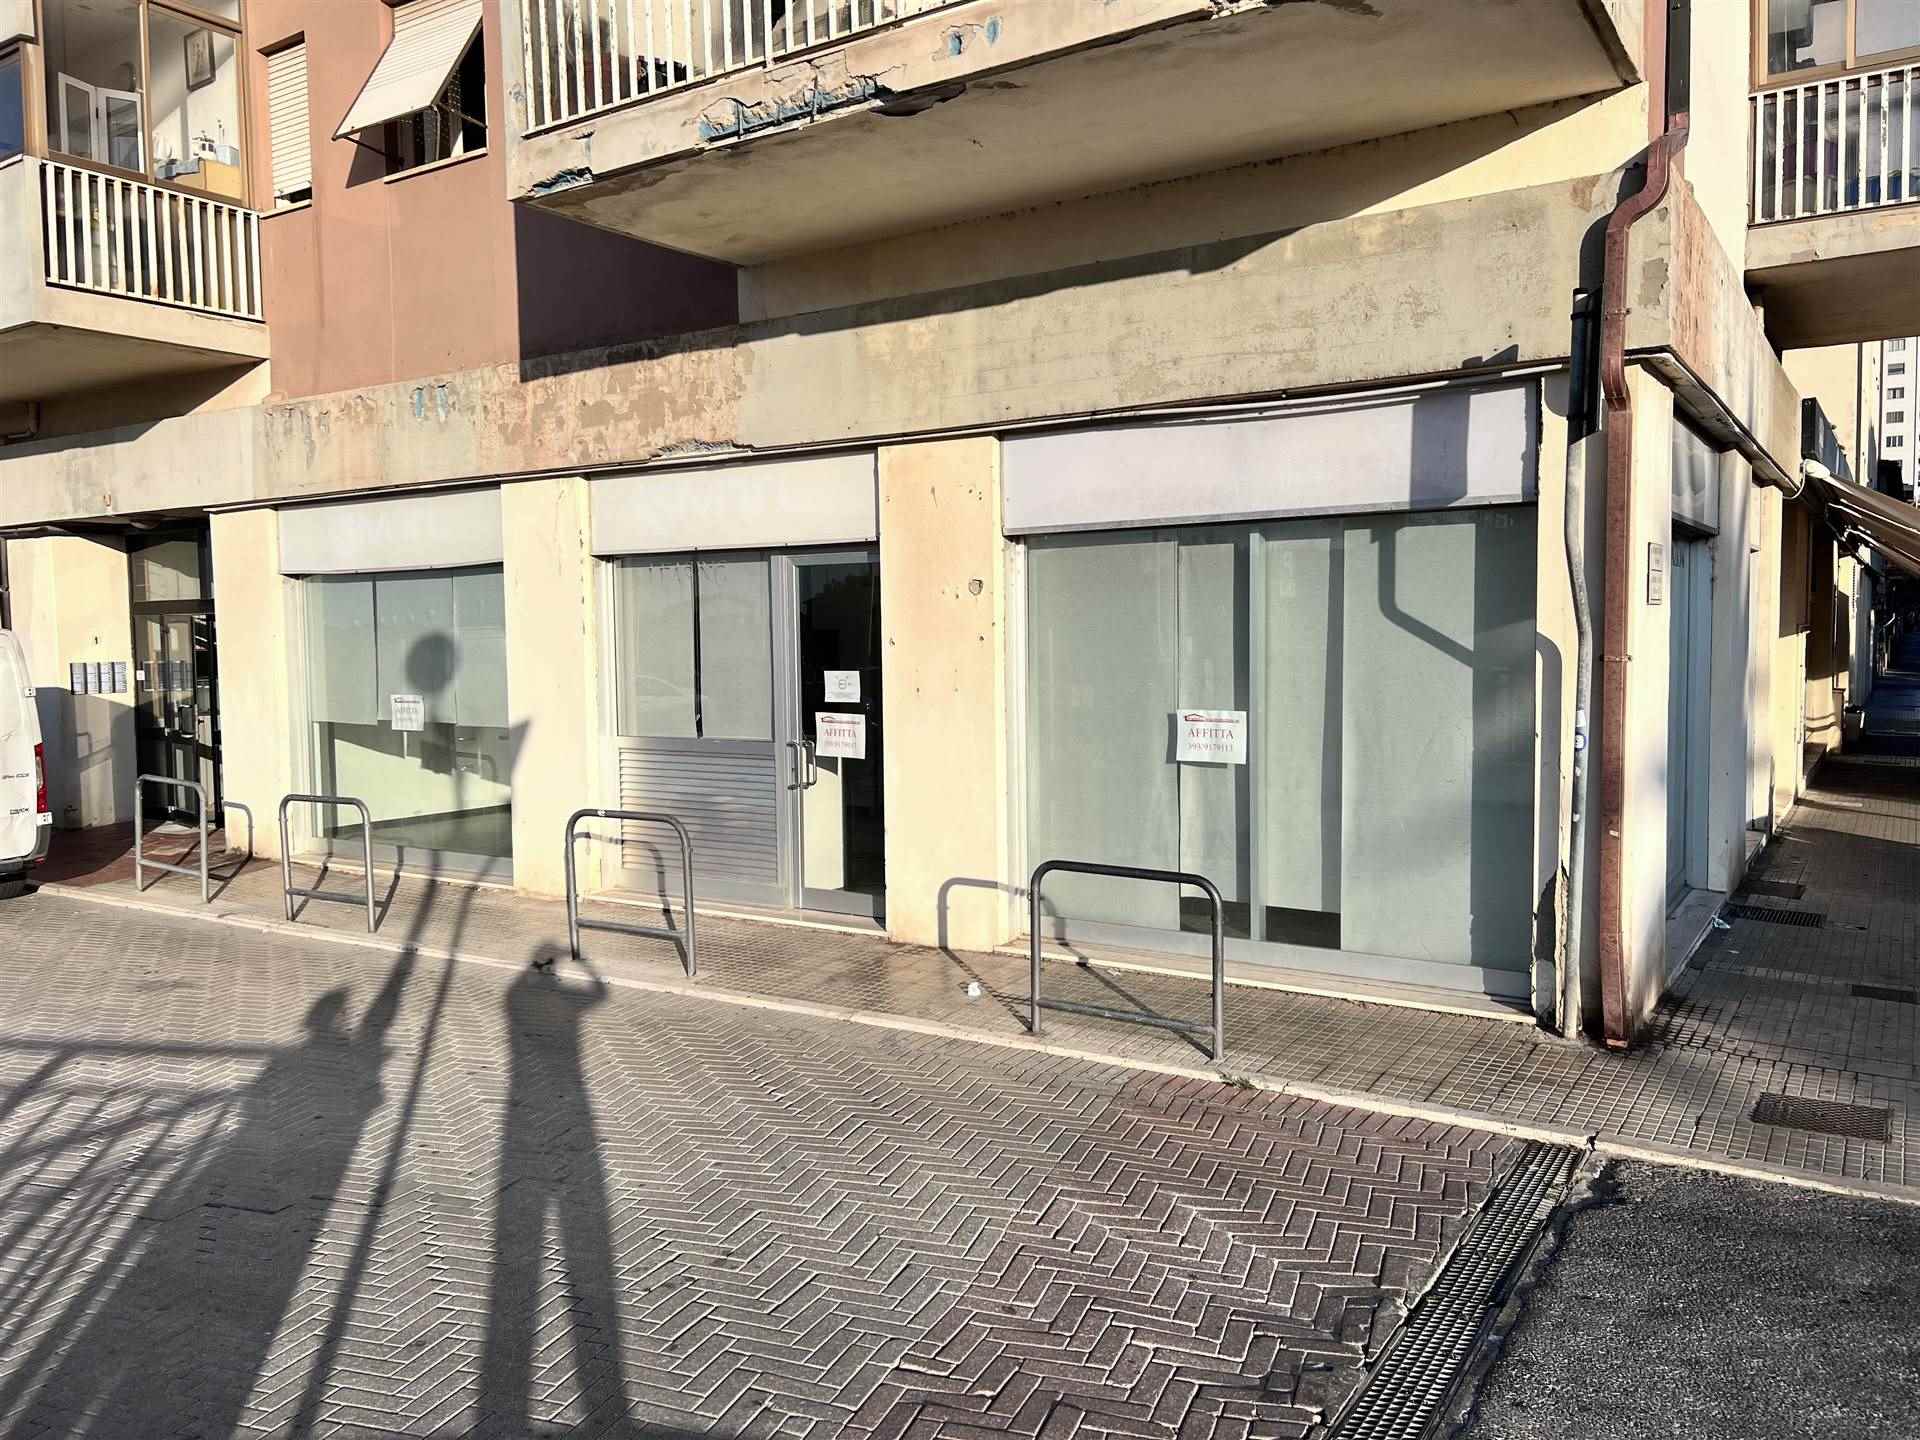 Attività / Licenza in affitto a Follonica, 2 locali, prezzo € 1.000 | PortaleAgenzieImmobiliari.it